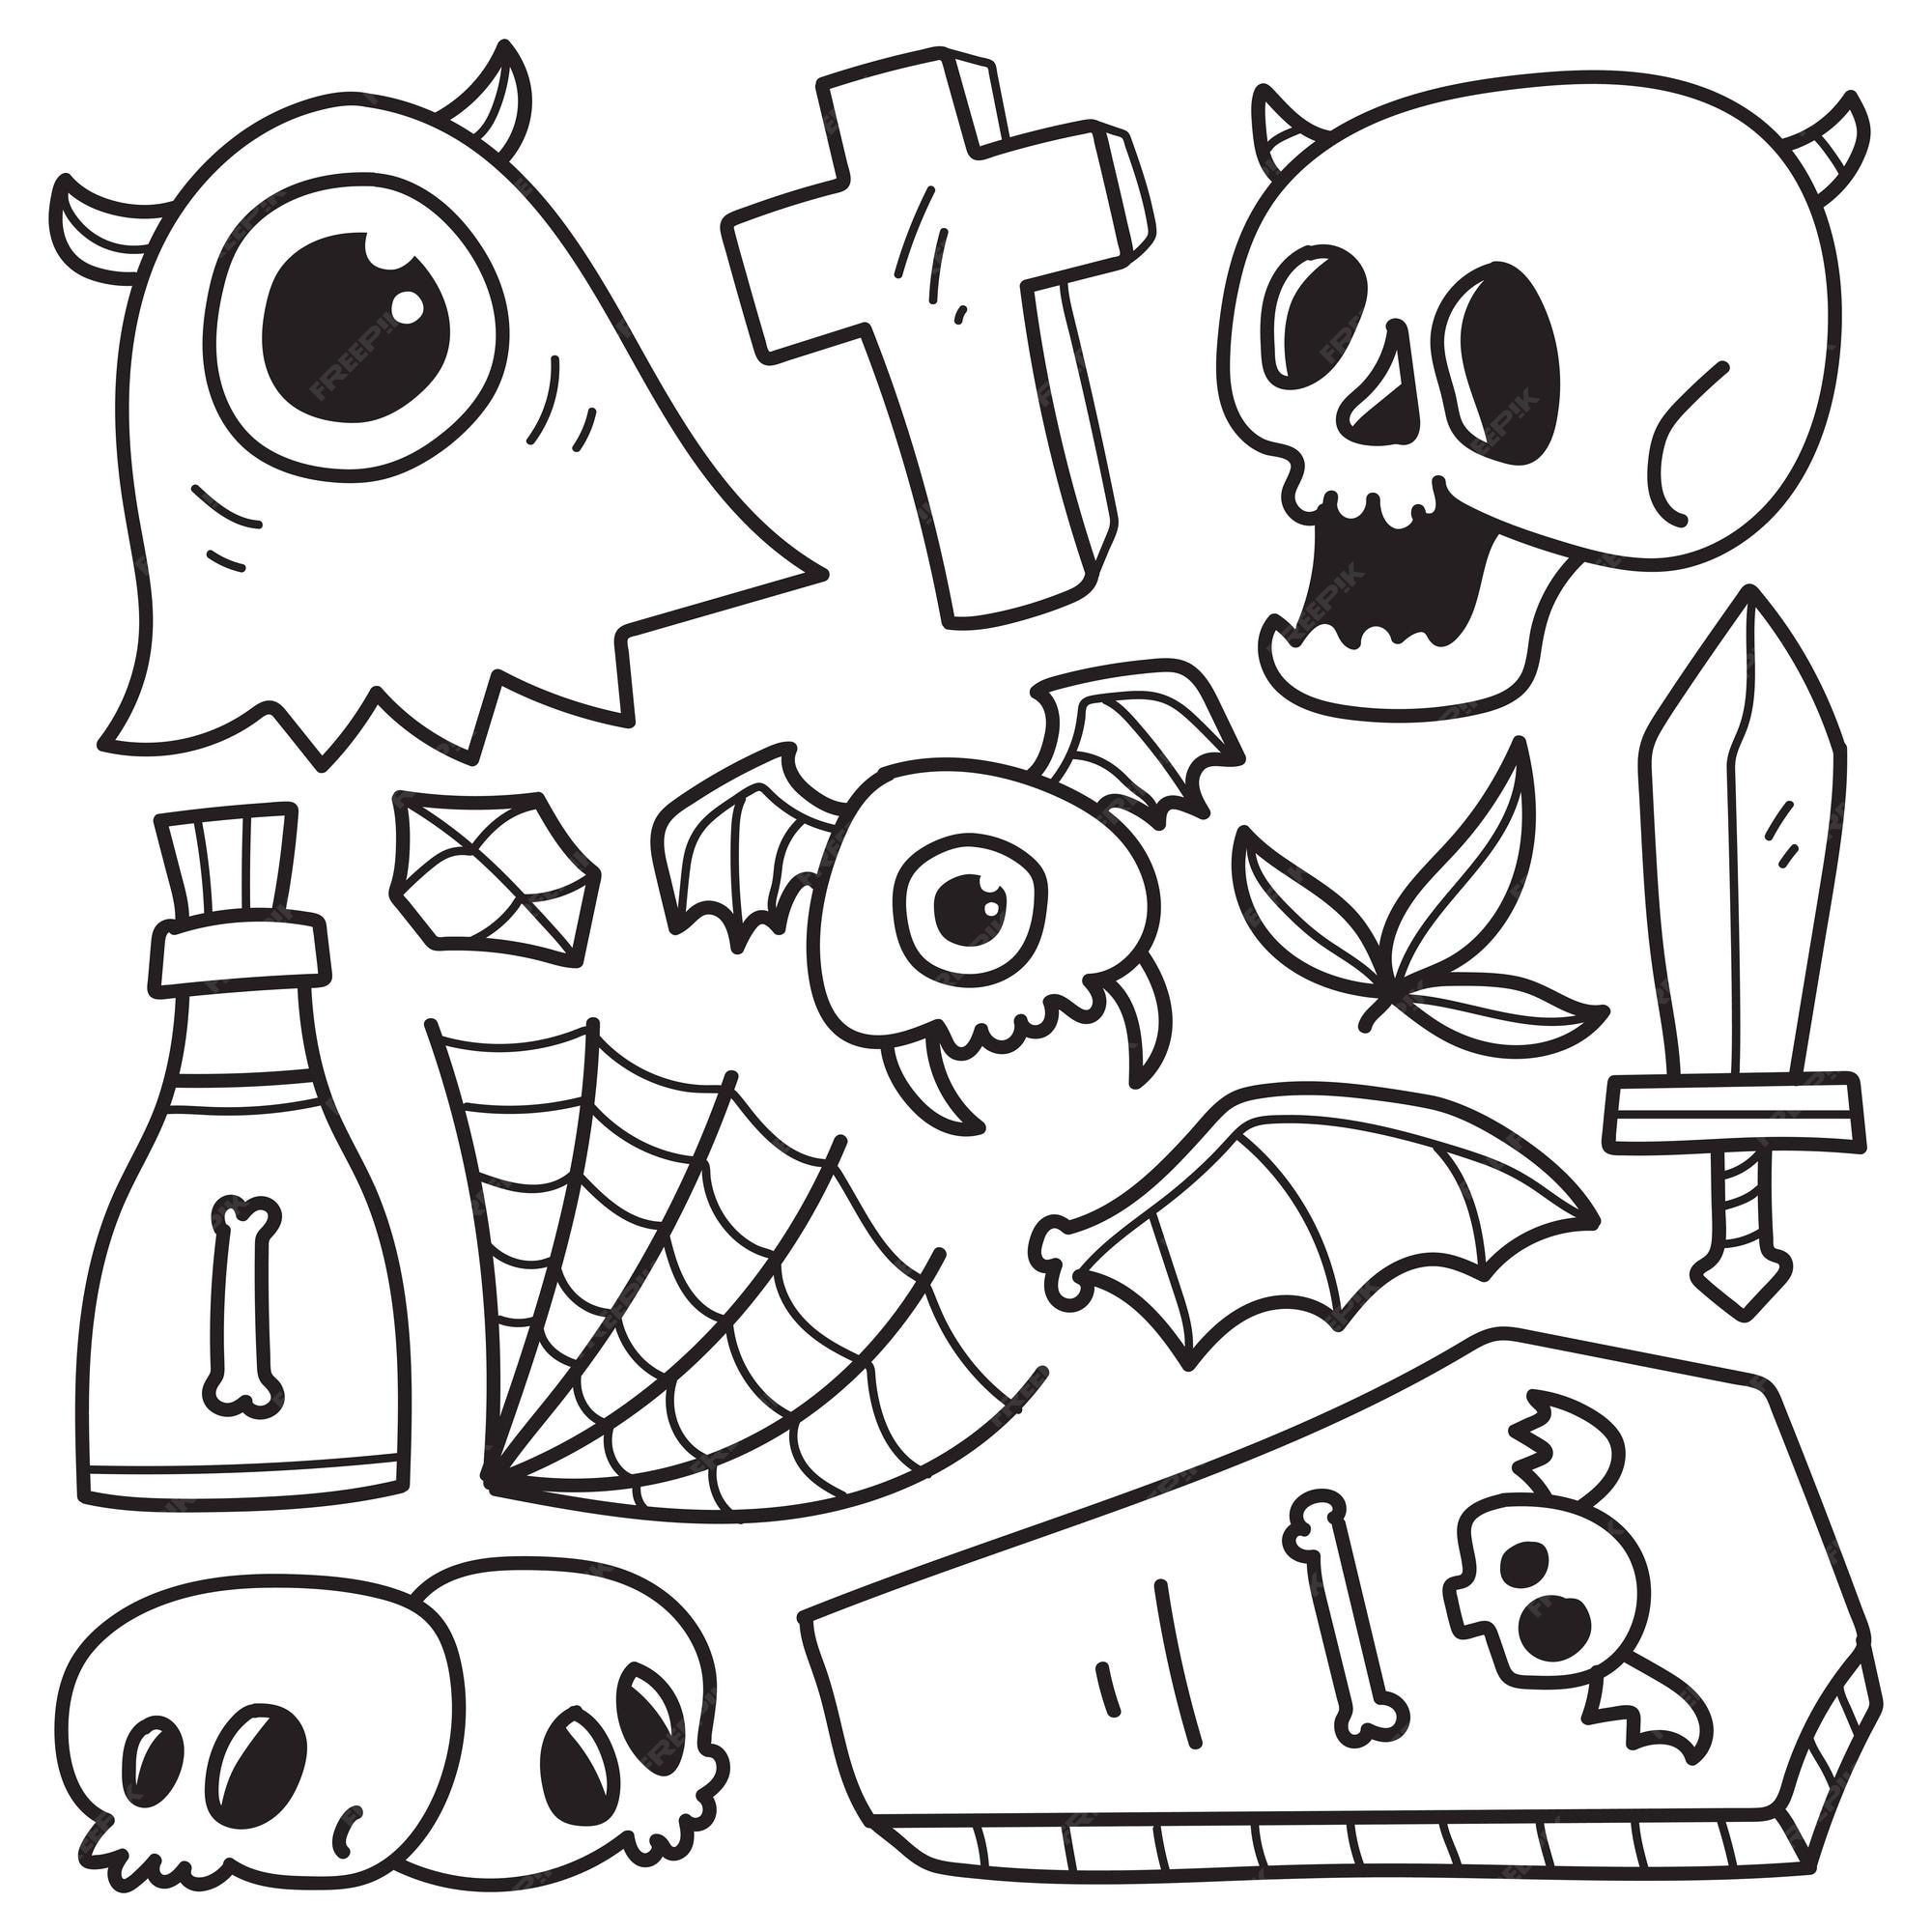 coleção de monstros de halloween doodle desenho como jack o'lantern,  fantasma, bruxa e muito mais. 3541107 Vetor no Vecteezy